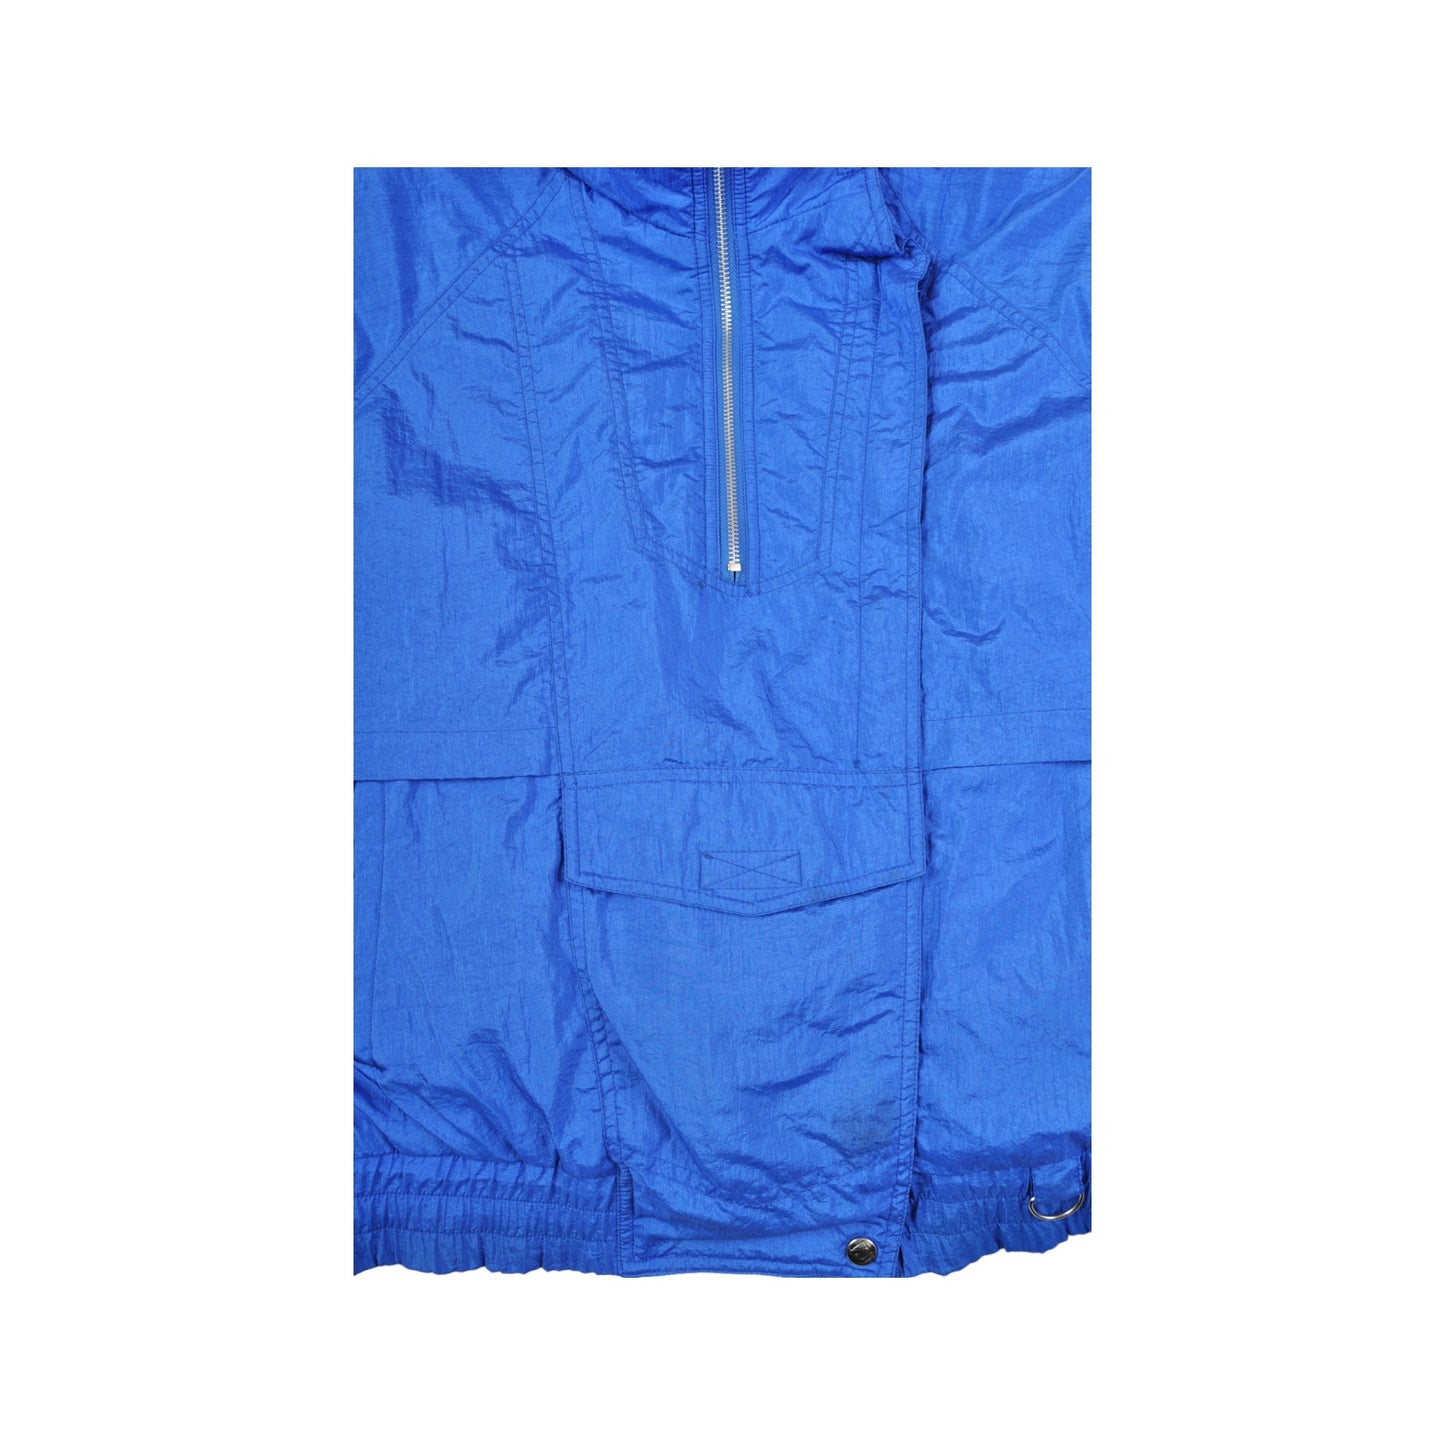 Vintage Ski 1/4 Zip Jacket 80s Style Blue Medium